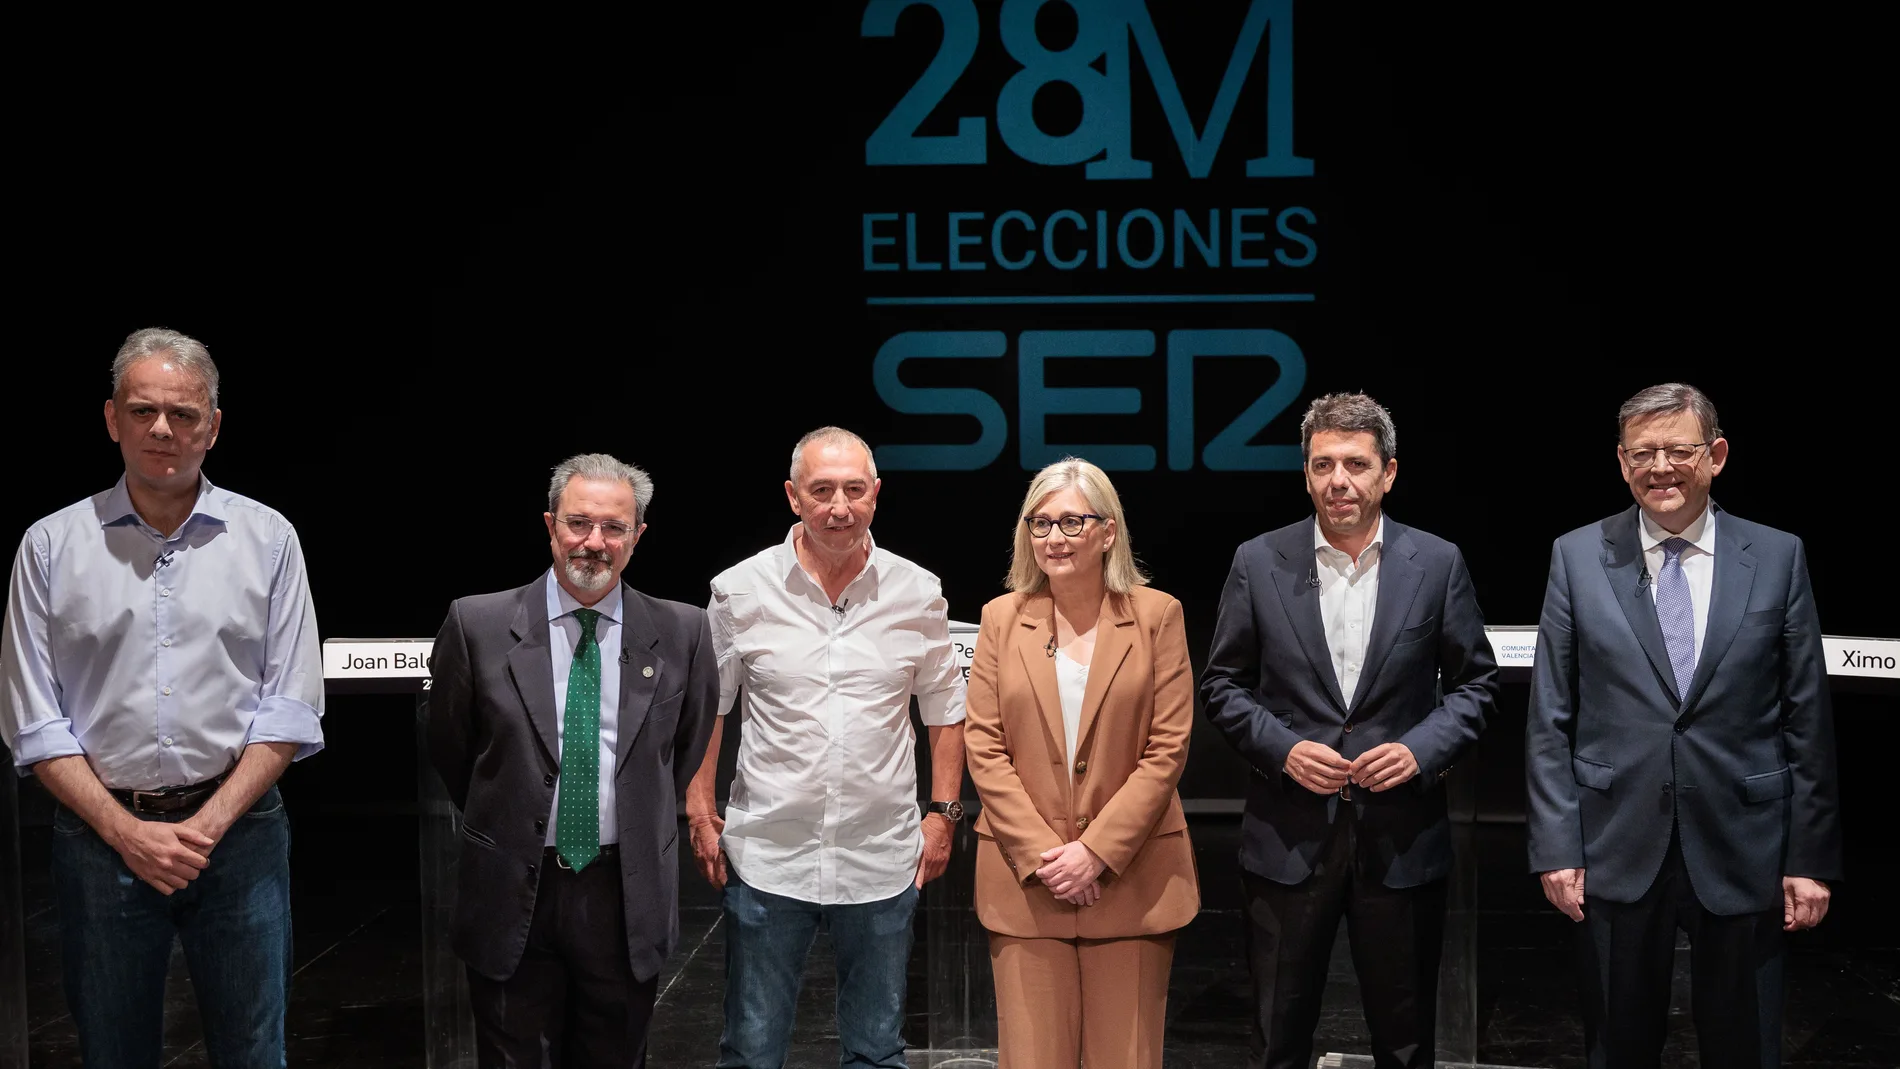 Héctor Illueca (UP), Carlos Flores (Vox), Joan Baldoví (Compromís), Mamen Peris (Cs), Carlos Mazón (PP) y Ximo Puig (PSPV)